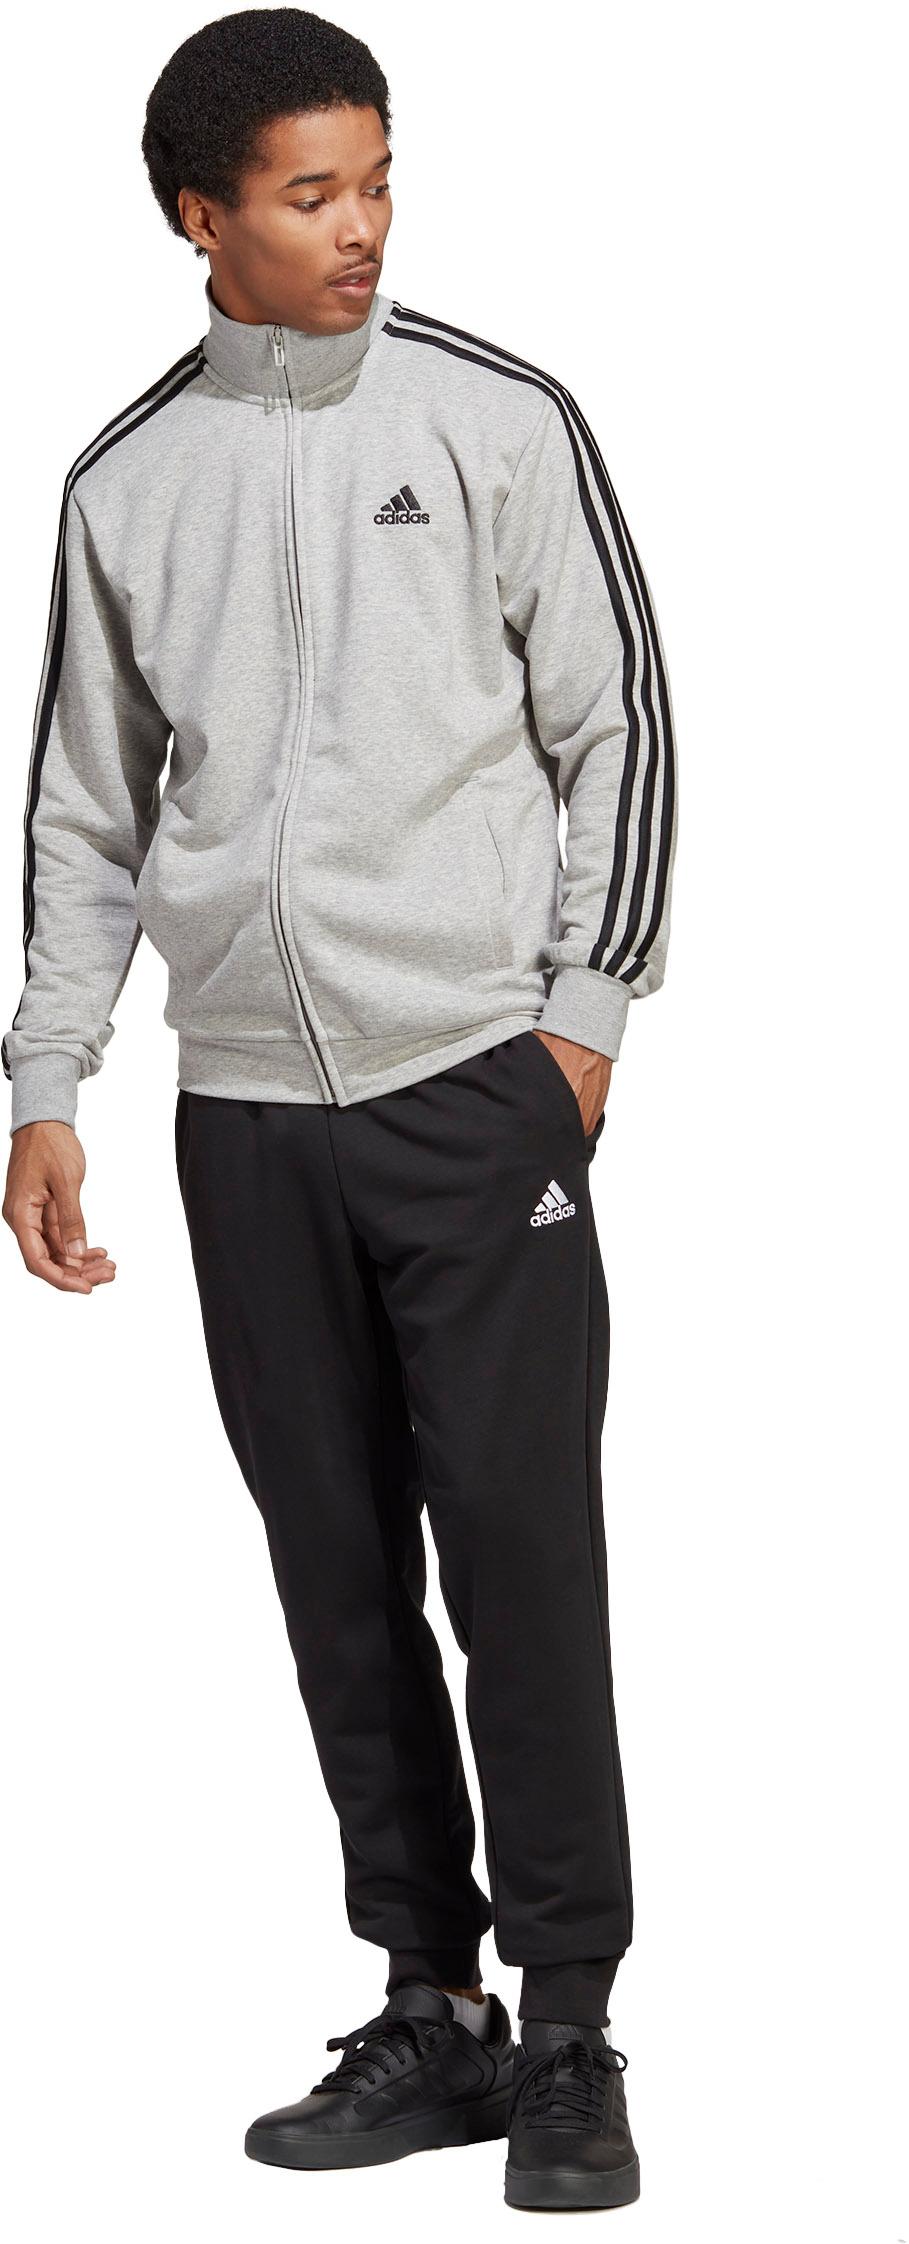 Adidas BASIC 3-STREIFEN FRENCH von im Herren medium grey TERRY SportScheck Online heather-black kaufen Shop Trainingsanzug